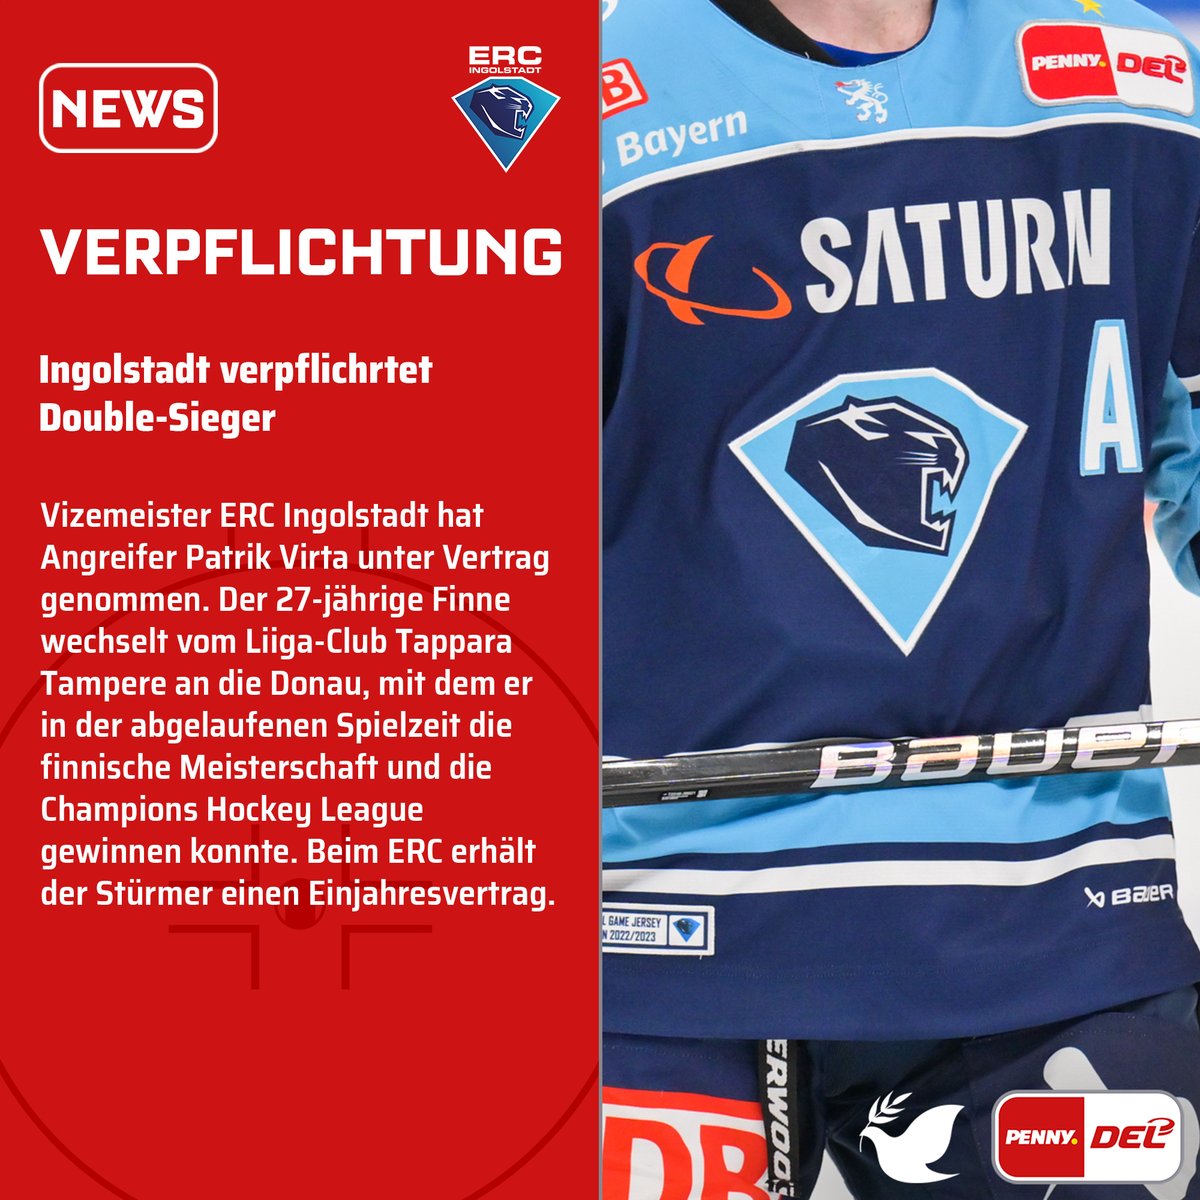 Vizemeister @ERCIngolstadt hat Patrik Virta verpflichtet. Der 27-jährige wechselt vom Liiga-Club Tappara Tampere an die Donau, mit dem er in der abgelaufenen Saison die finnische Meisterschaft und die Champions Hockey League gewinnen konnte. #PENNYDEL